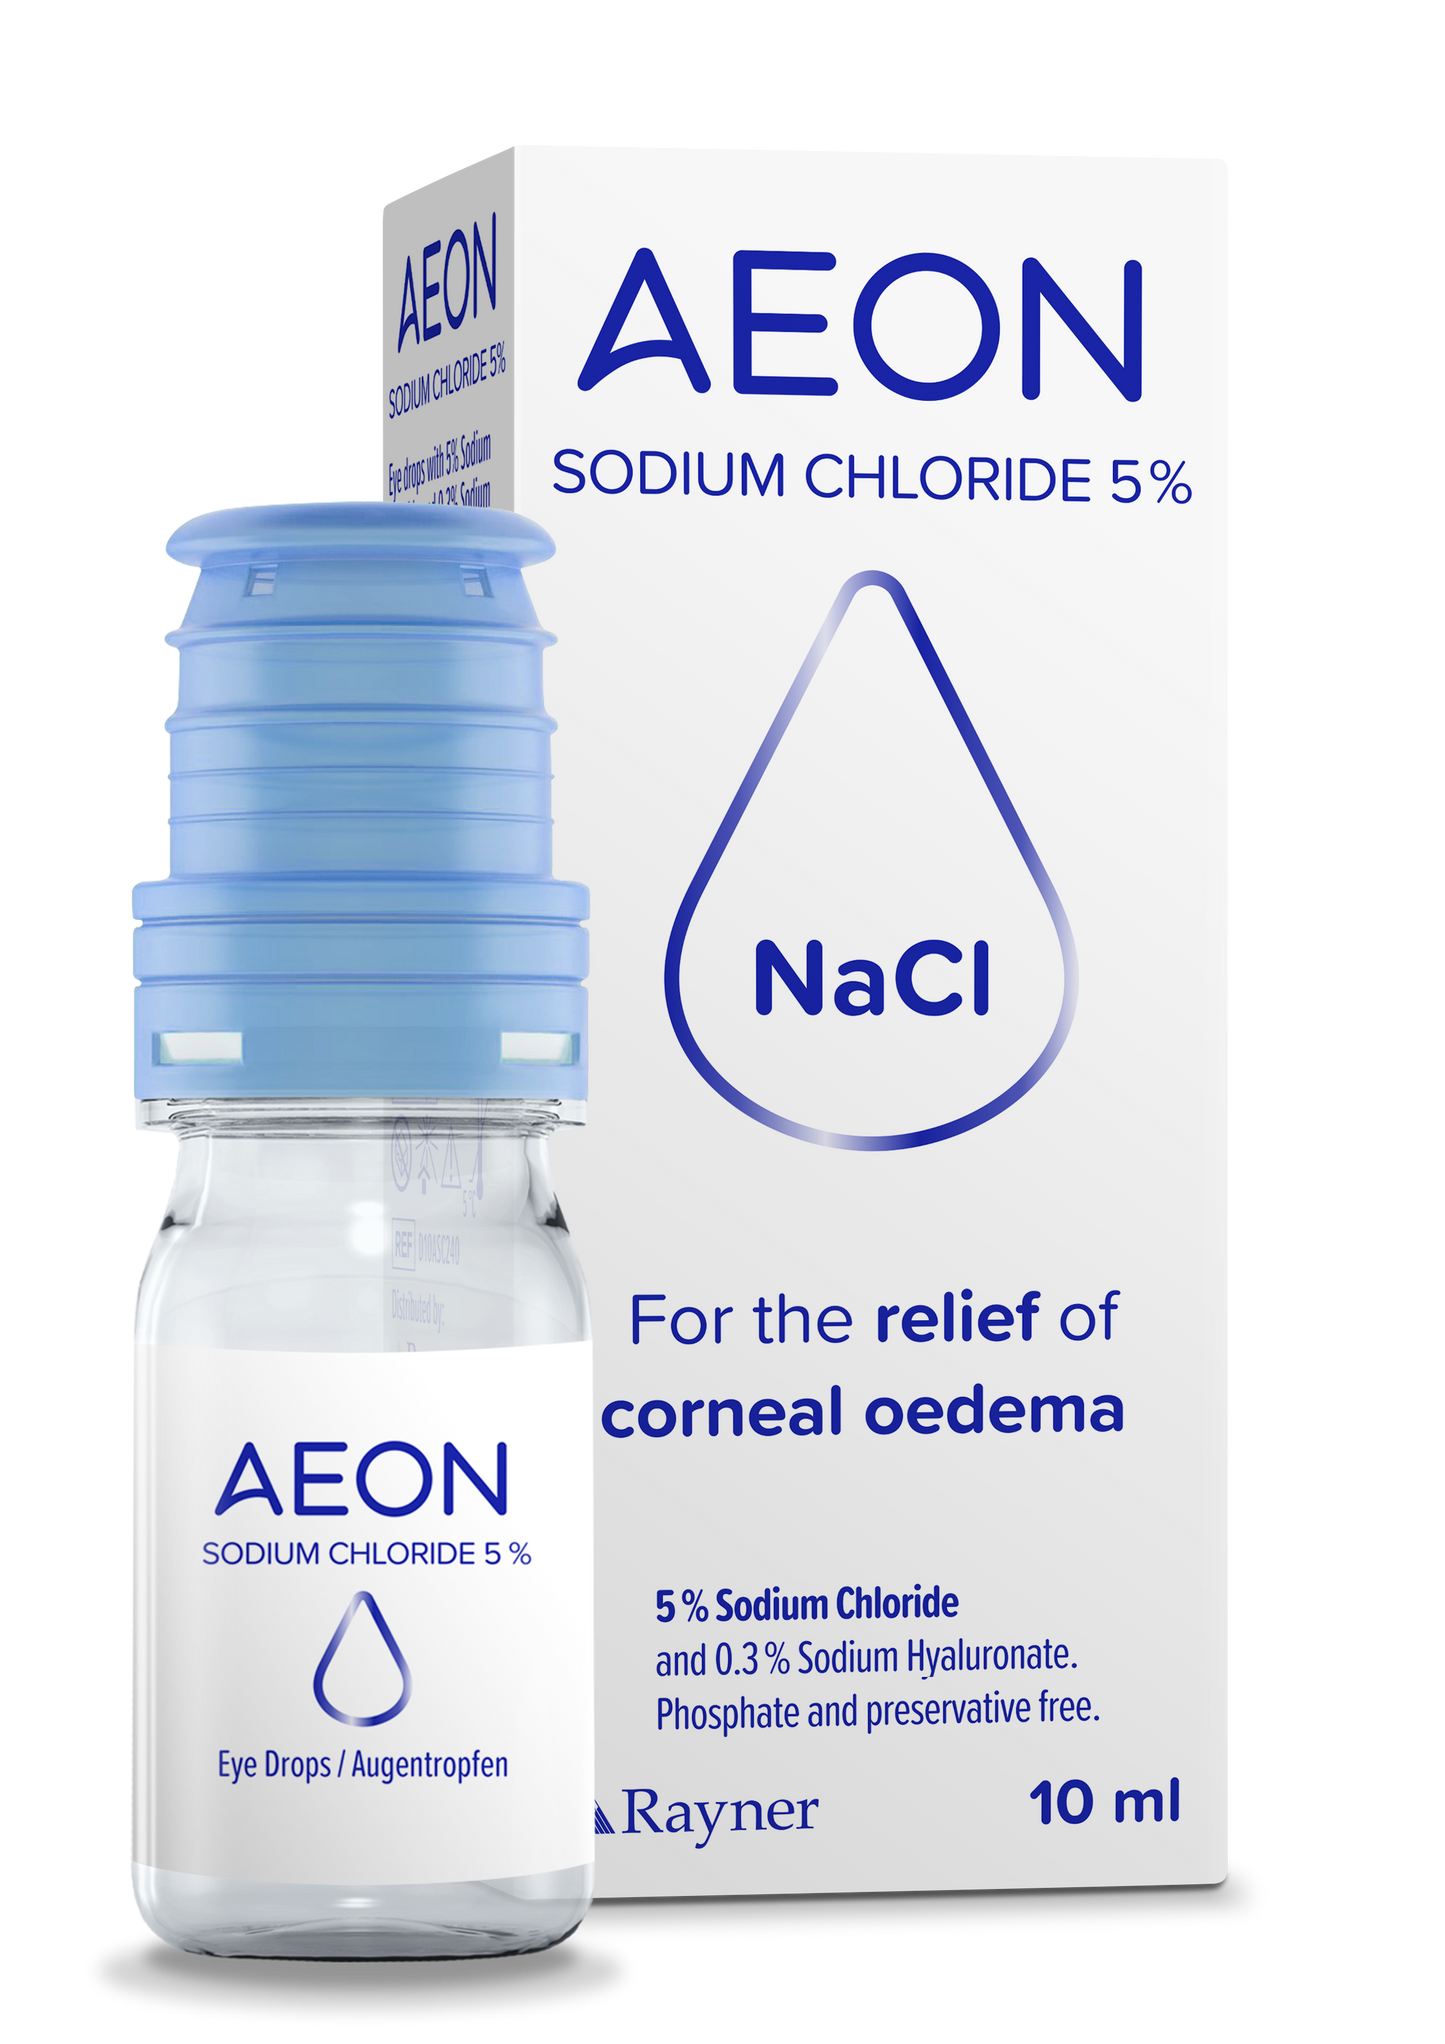 AEON NaCl 5% Corneal Oedema Eye Drops